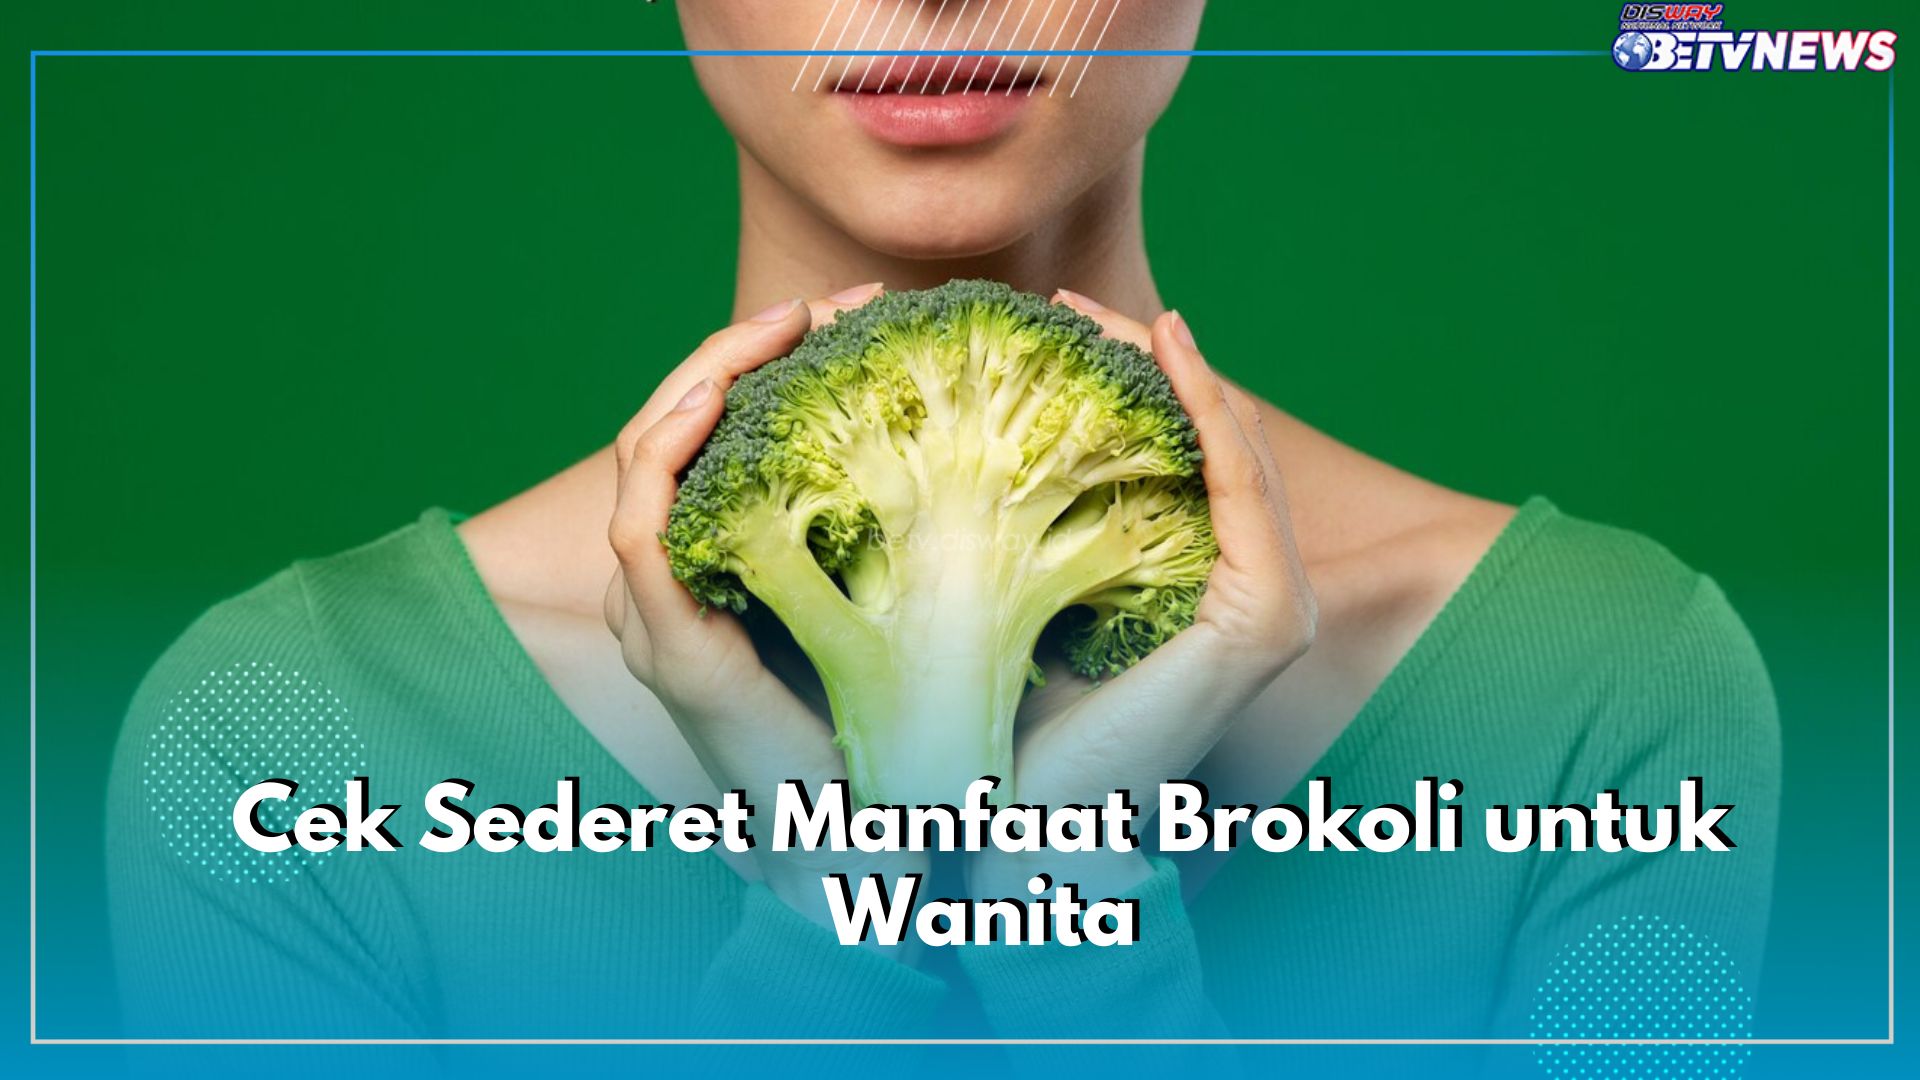 Banyak Tawarkan Khasiat! Cek Sederet Manfaat Brokoli untuk Wanita, Salah Satunya Meningkatkan Kesuburan Rahim